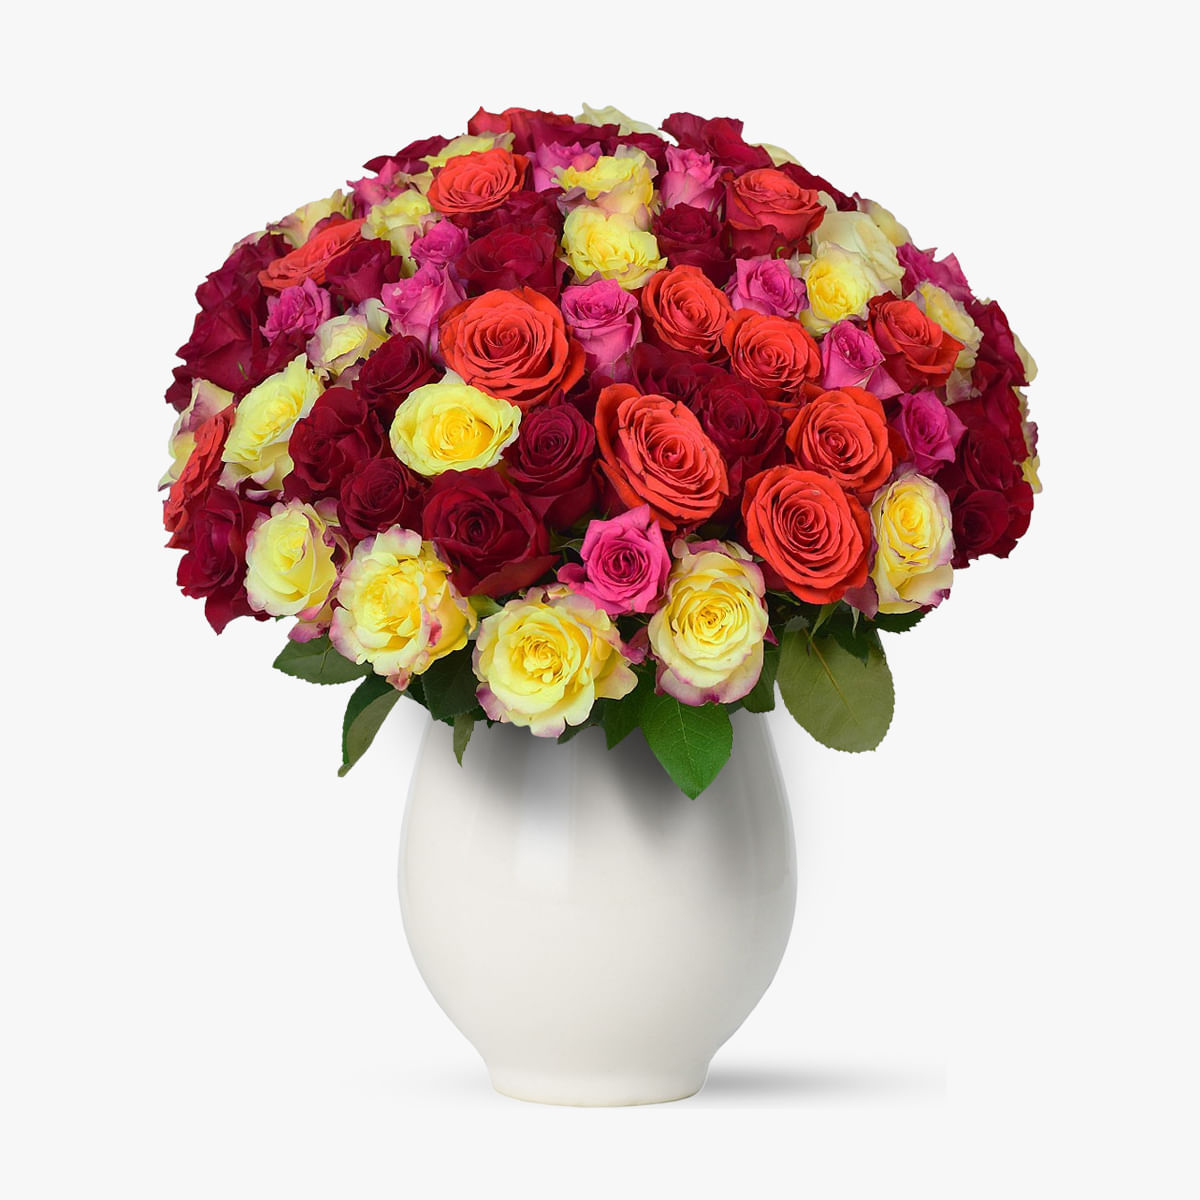 Buchet de 101 trandafiri multicolori indraznet si foarte colorat